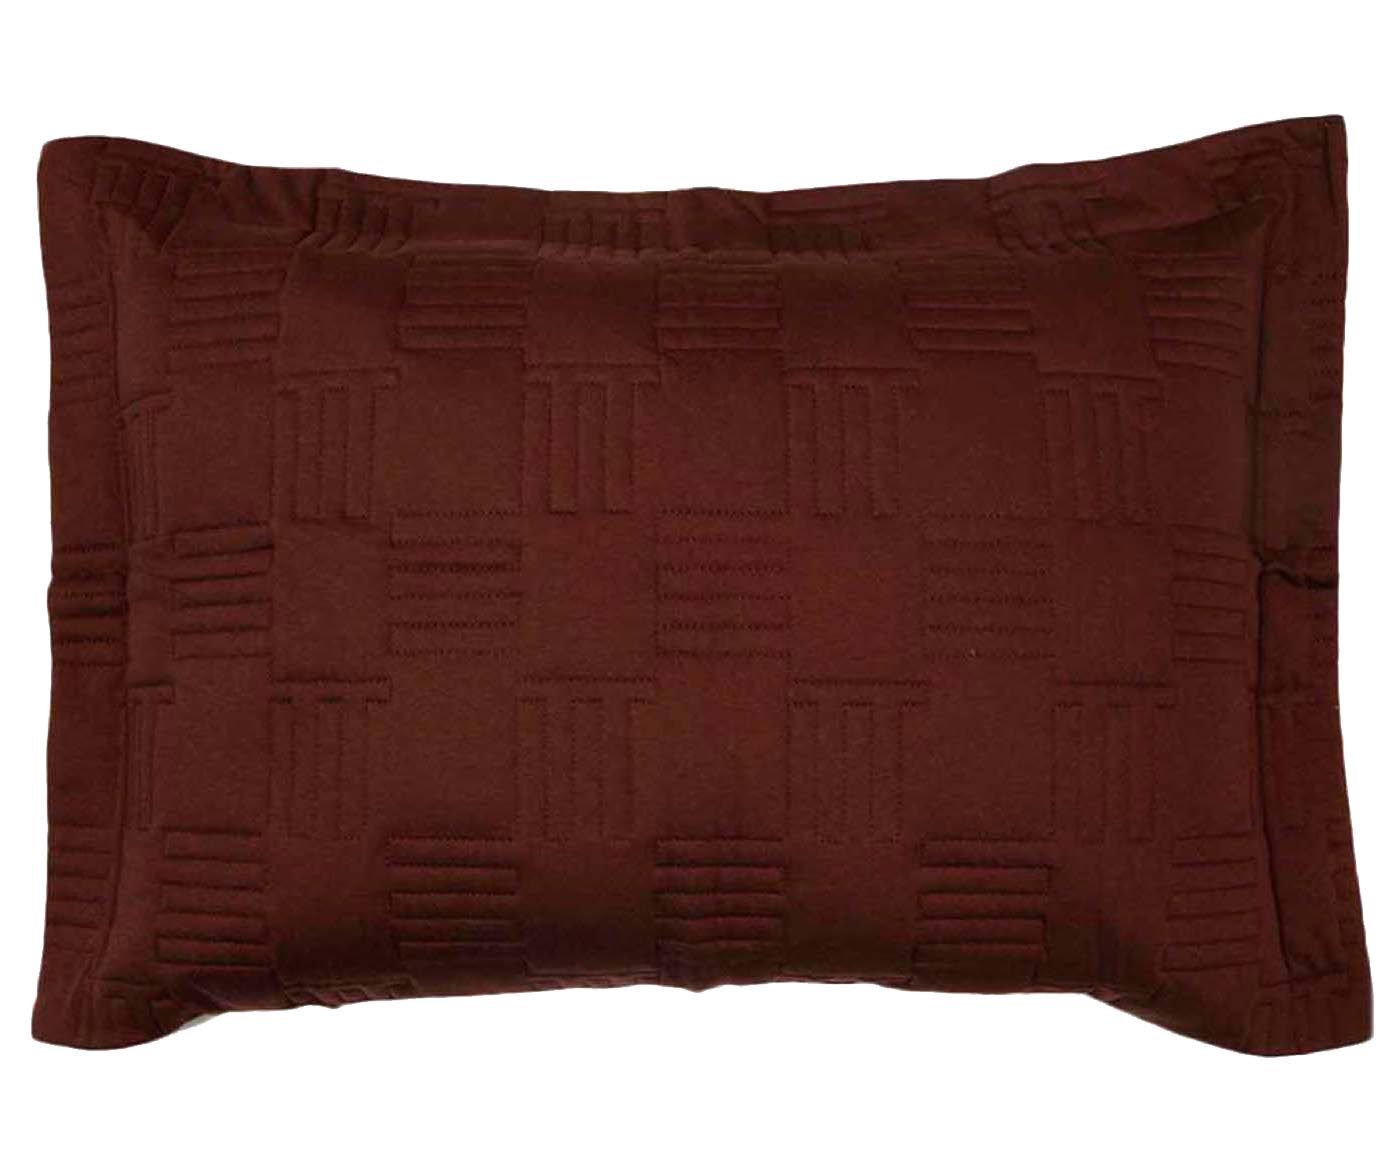 Porta-travesseiro colorado - sand | Westwing.com.br